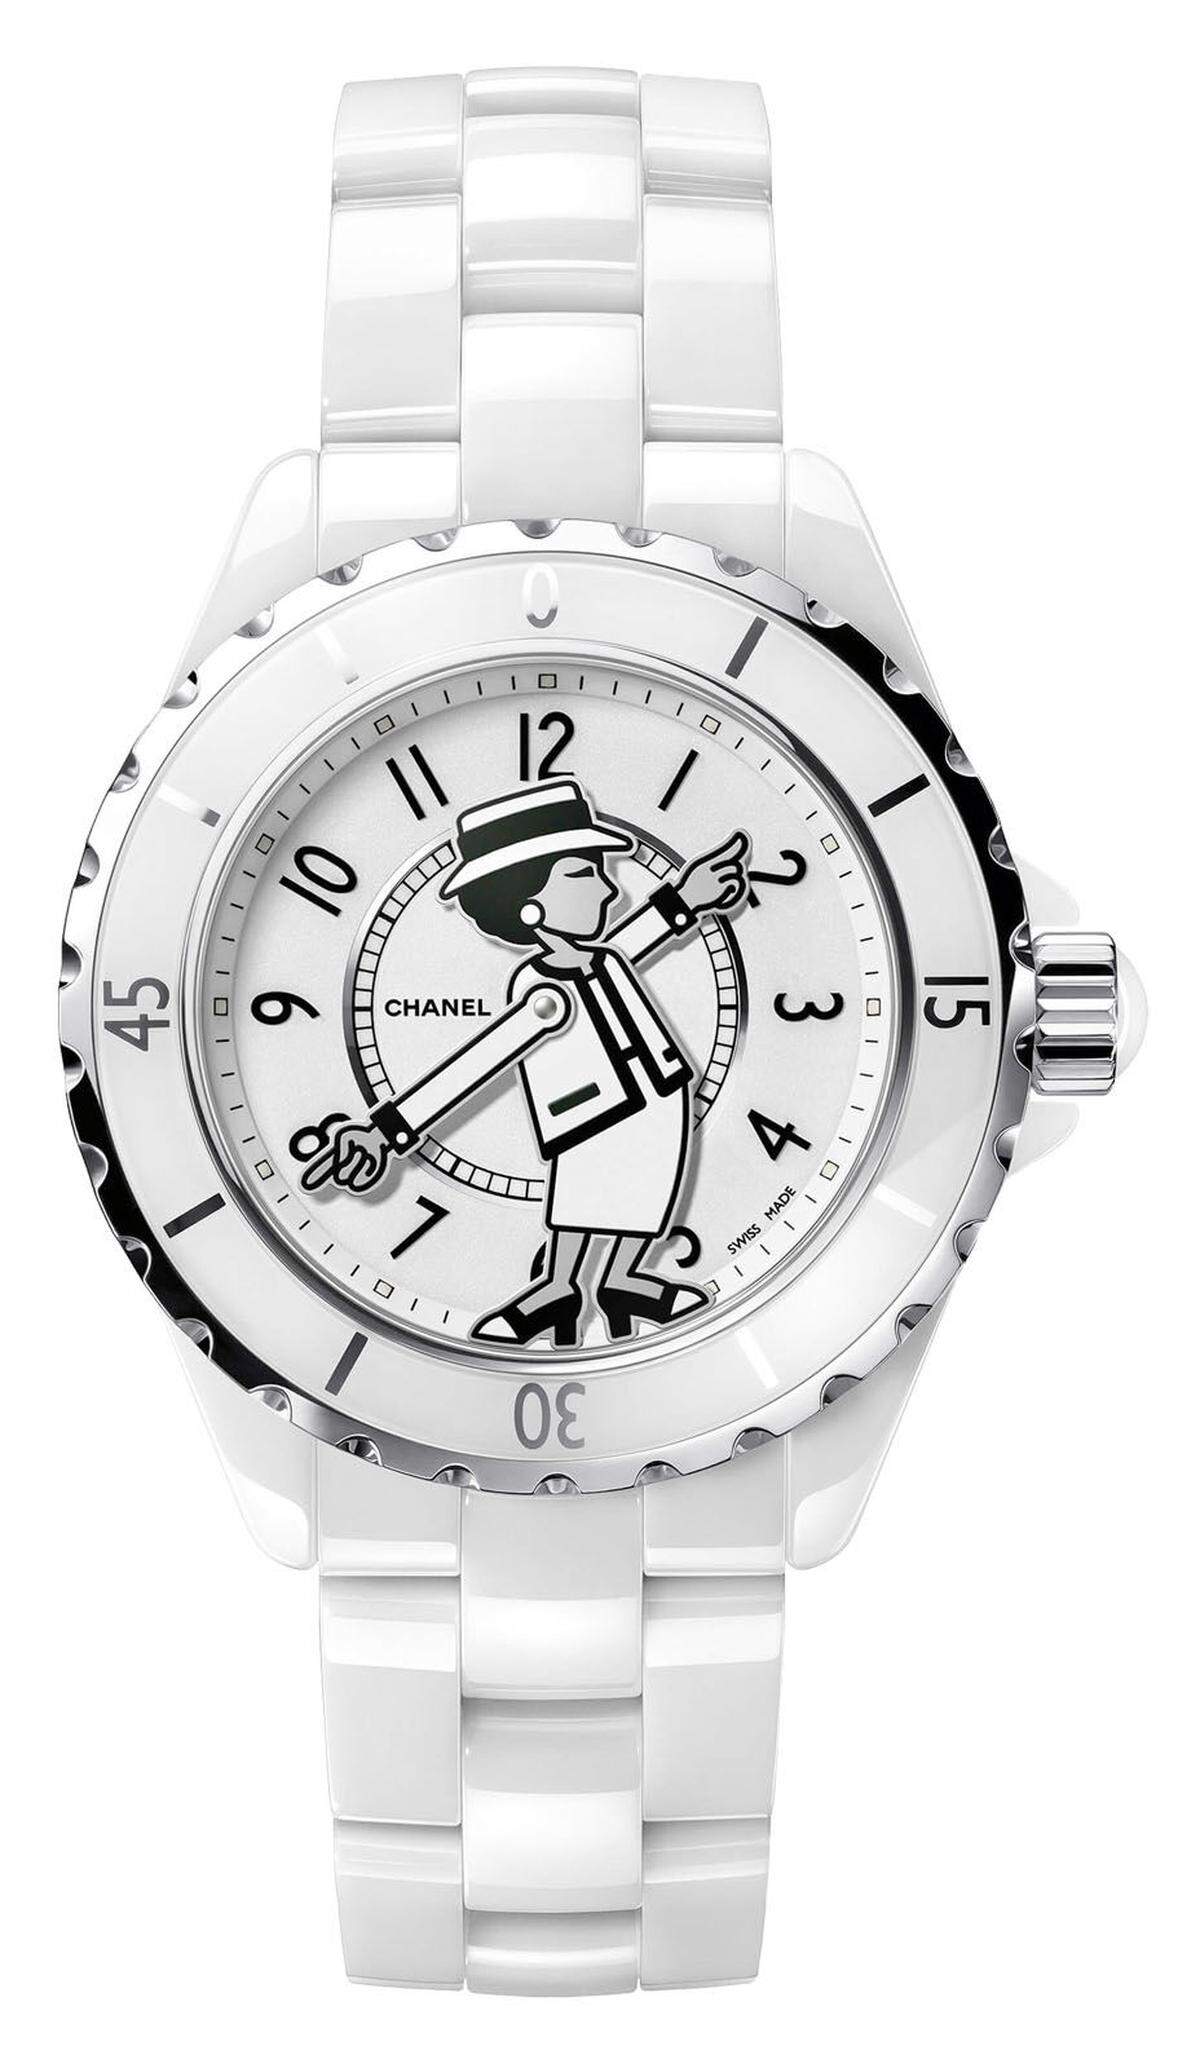 Zum 30. Geburtstag der Chanel-Uhrensparte zeigt Gabrielle „Coco“ Chanel die Zeit auf dem Zifferblatt der „J12“. Nur je 555 Stück der entweder schneeweißen oder tiefschwarzen Keramikuhr wird es geben. Rar und cool – ein It-Teil, das in die Geschichte der Marke eingehen wird. Preis: 6900 Euro.